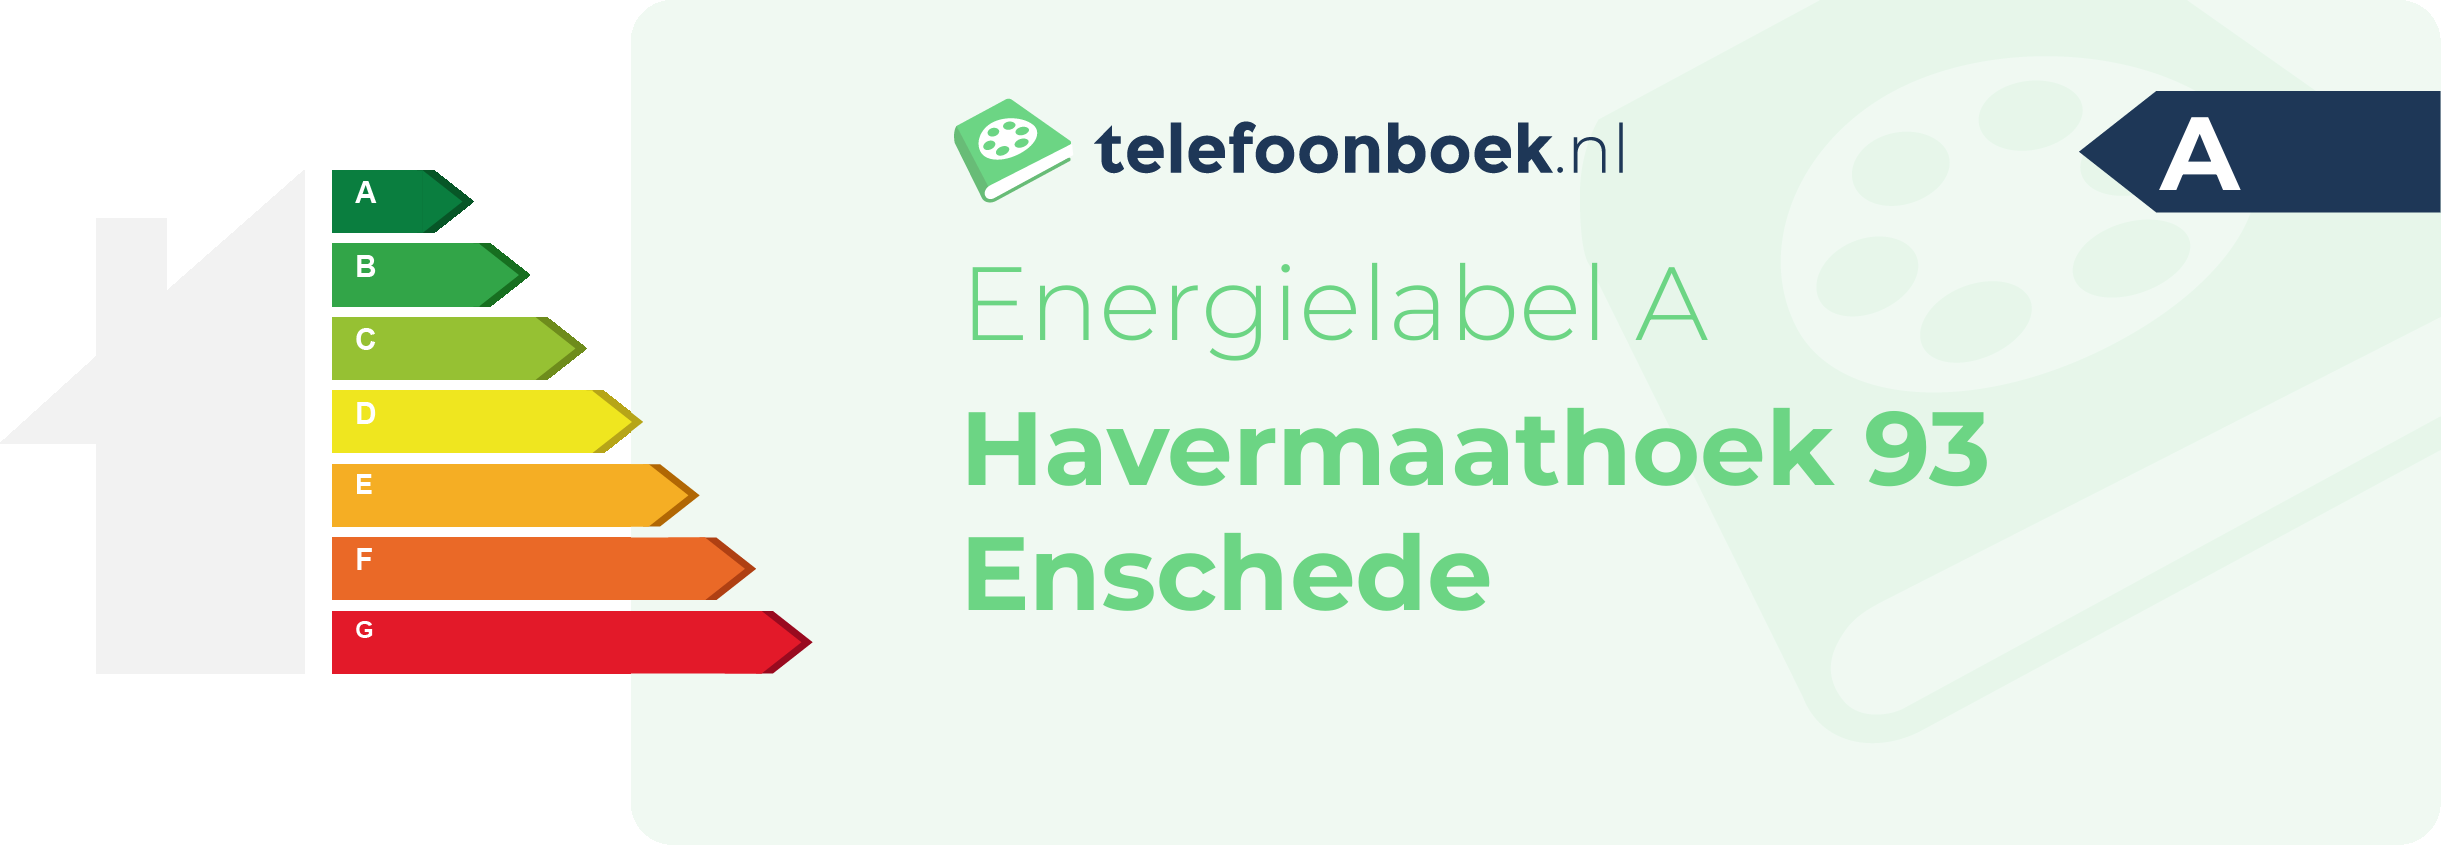 Energielabel Havermaathoek 93 Enschede